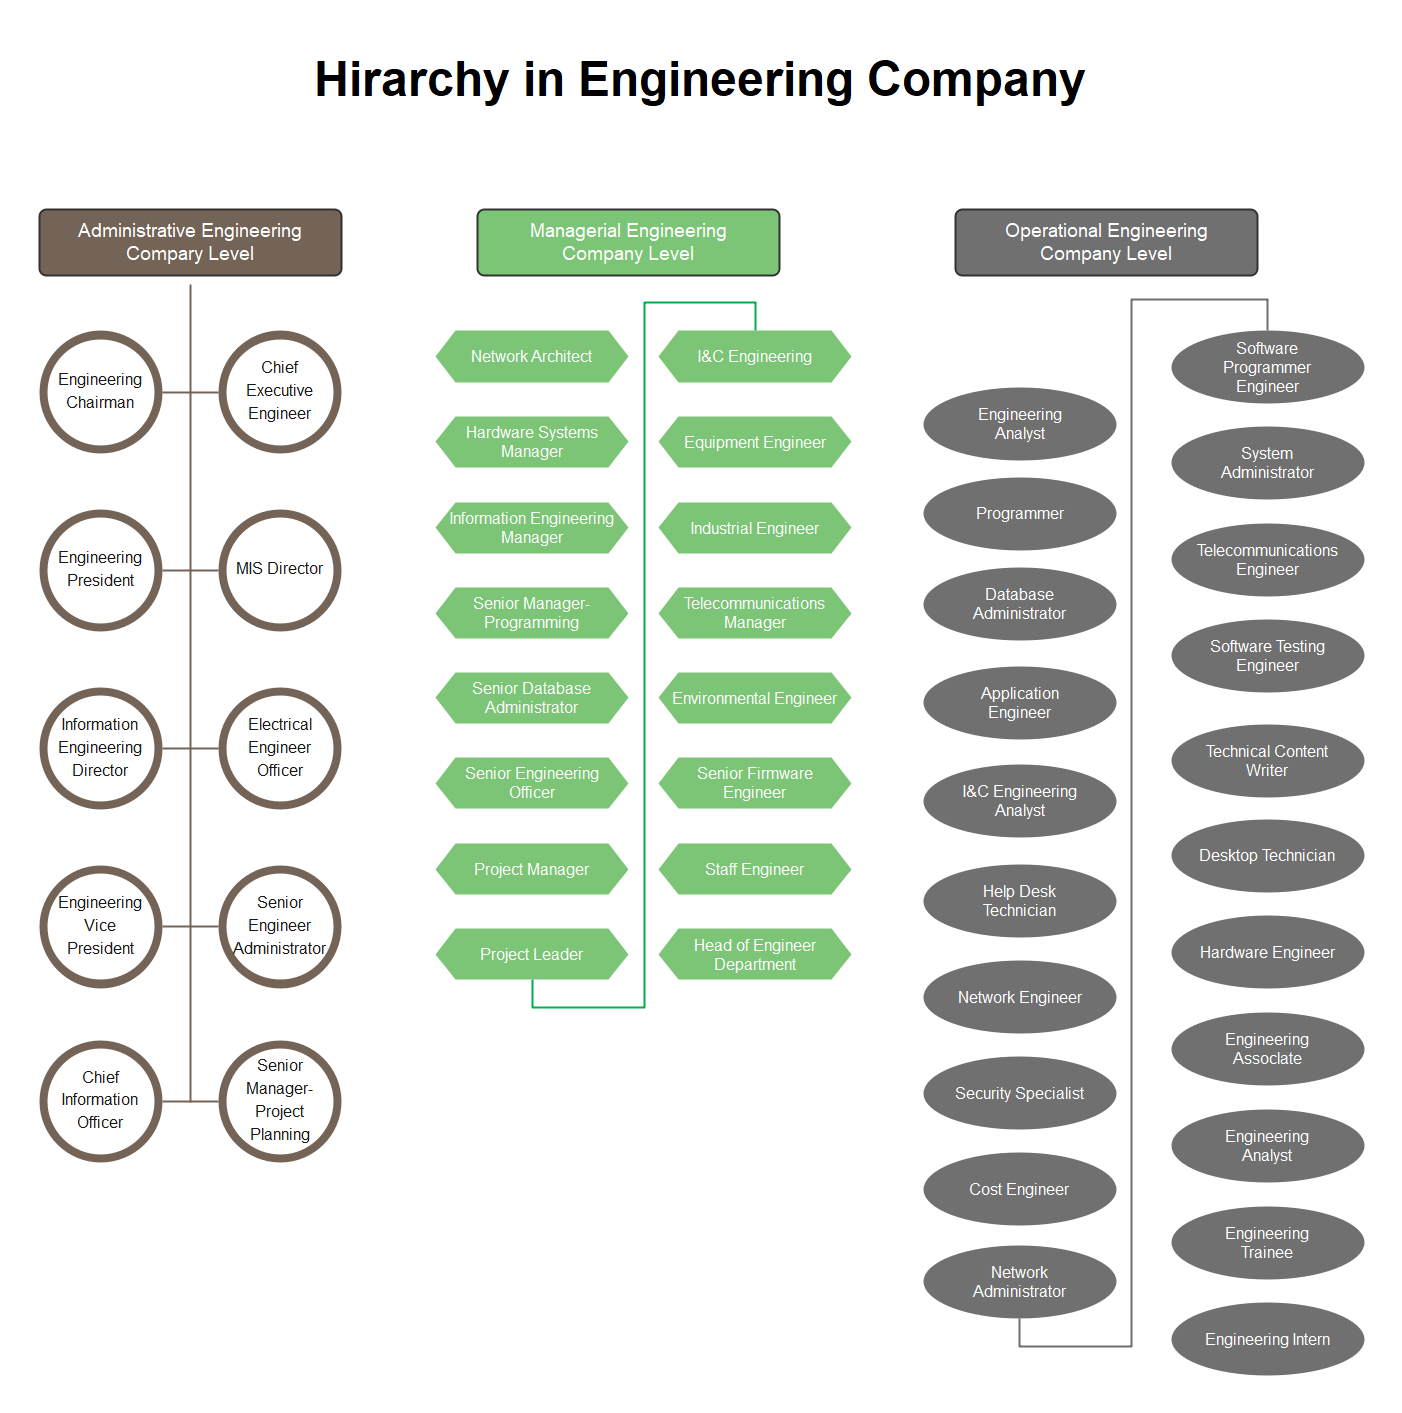 Diagramm zur Hierarchie des Ingenieurbüros